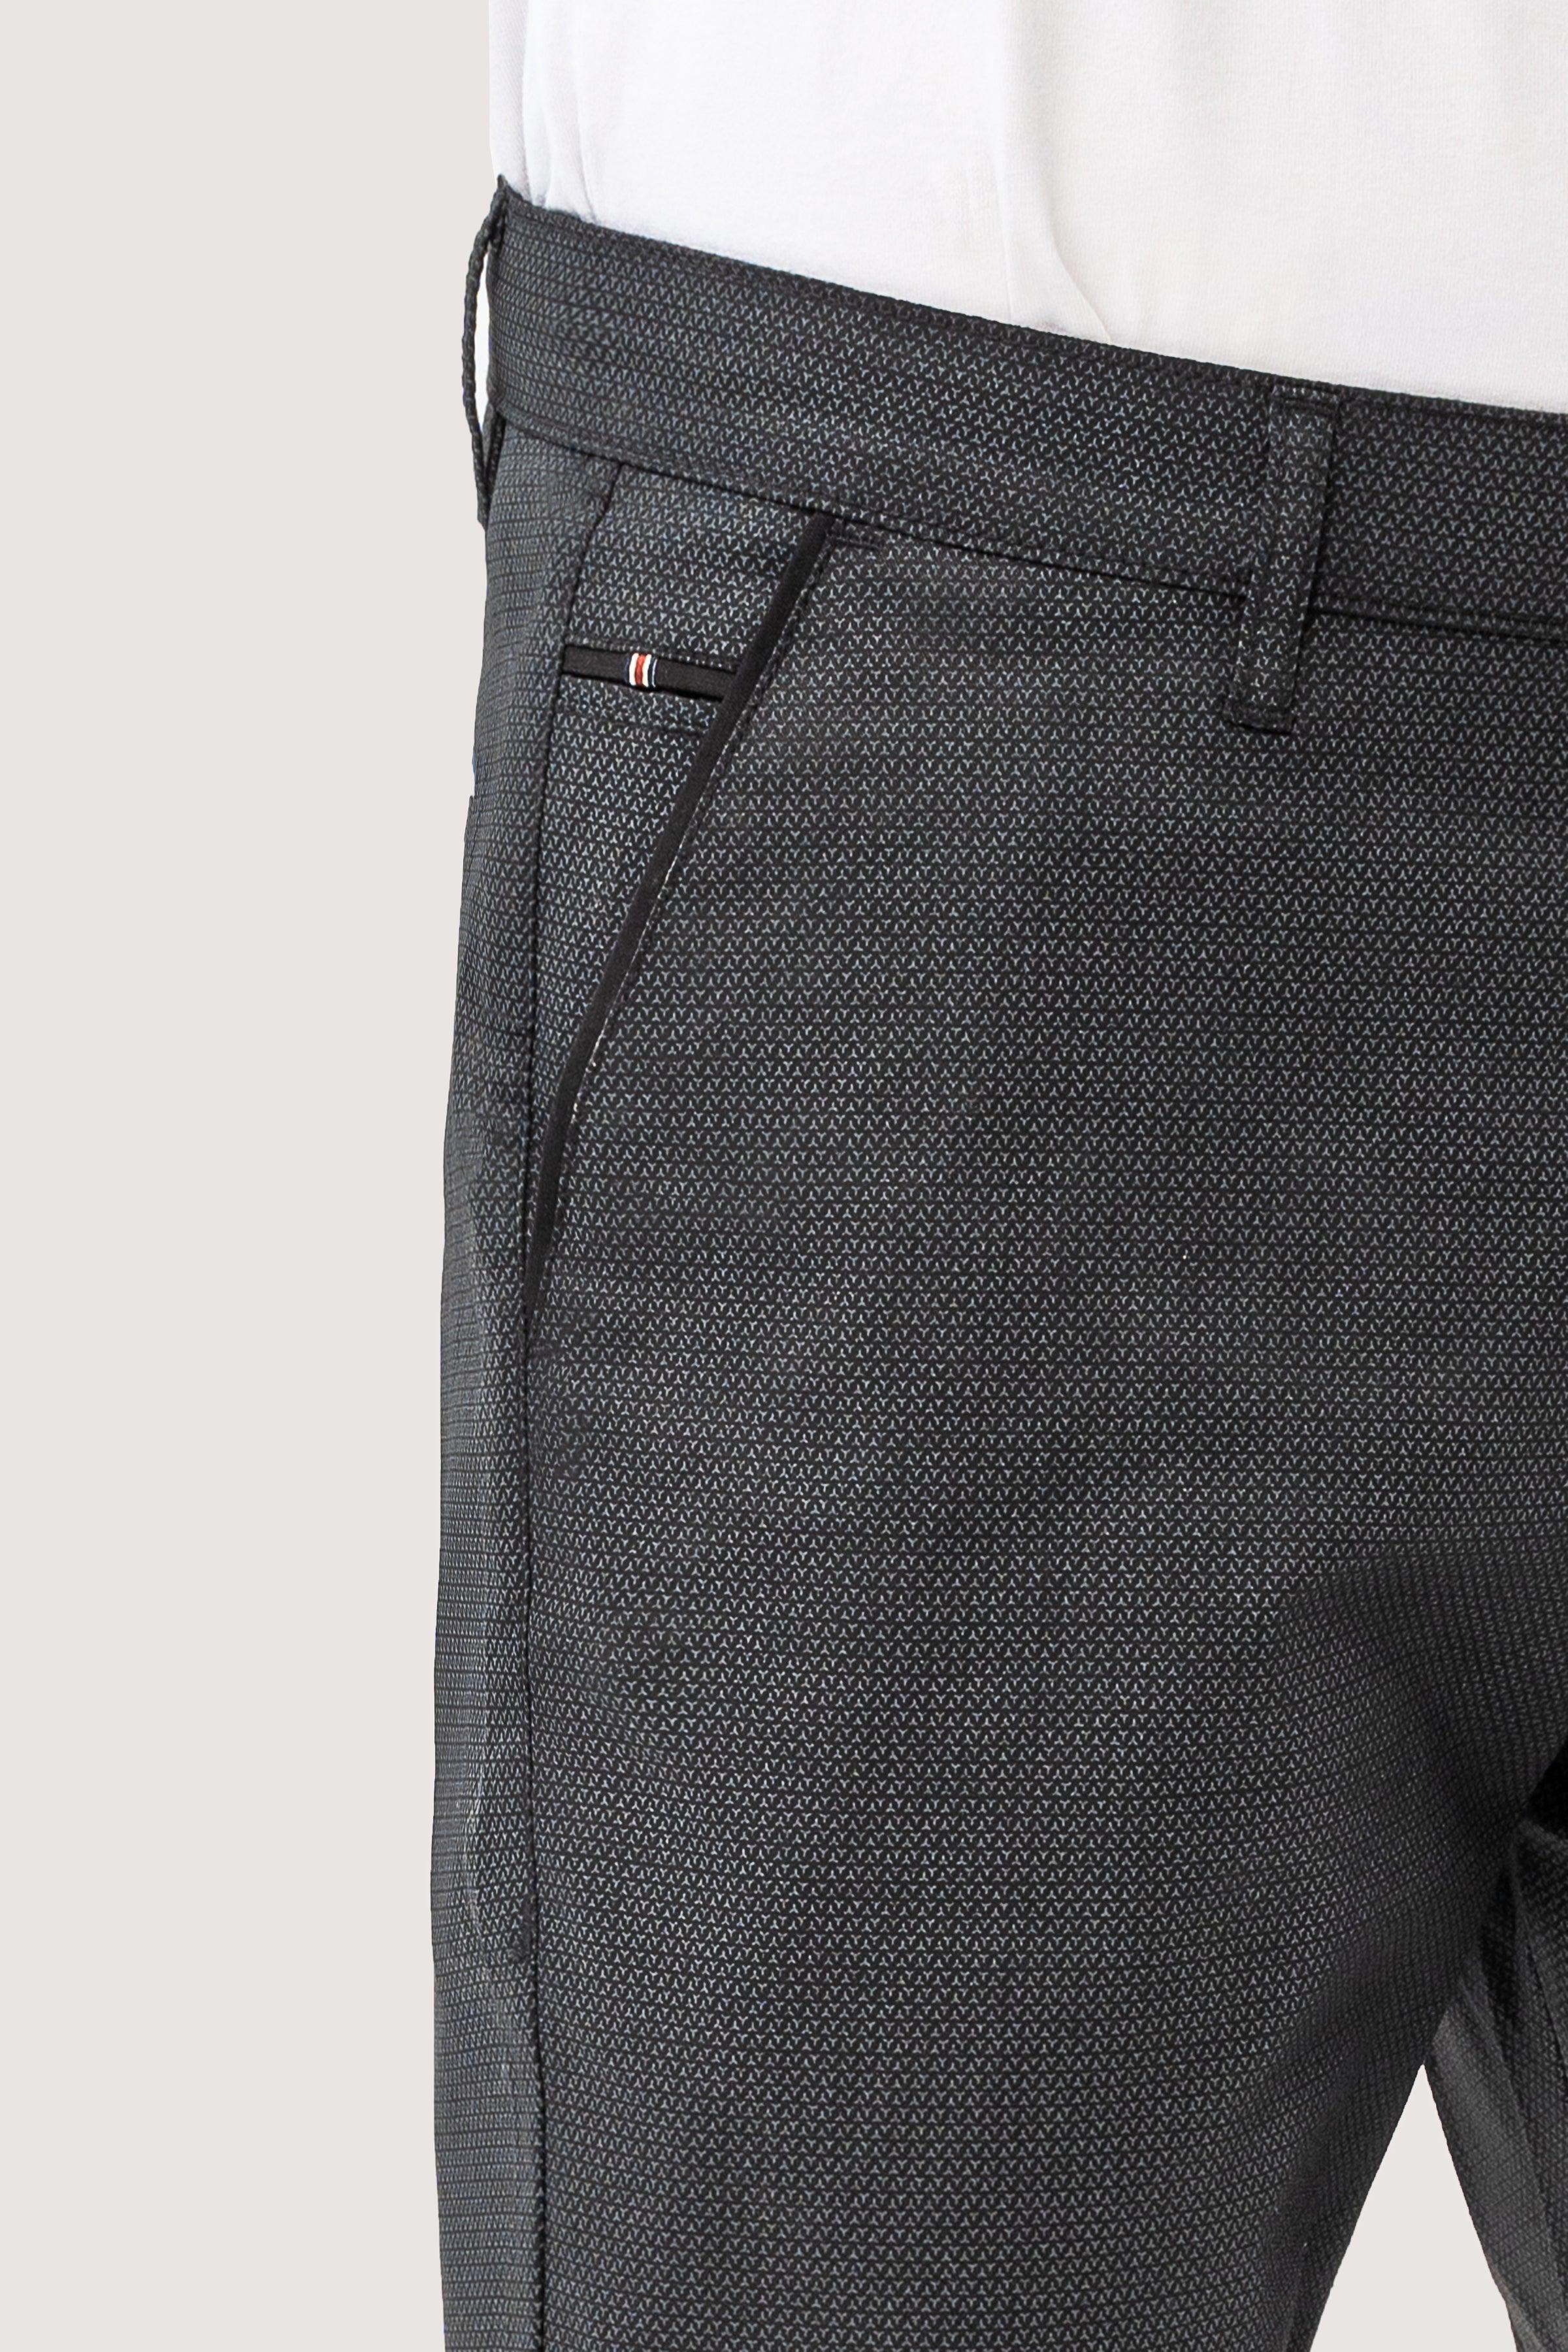 CROSS POCKET PRINTED PANT BLACK at Charcoal Clothing